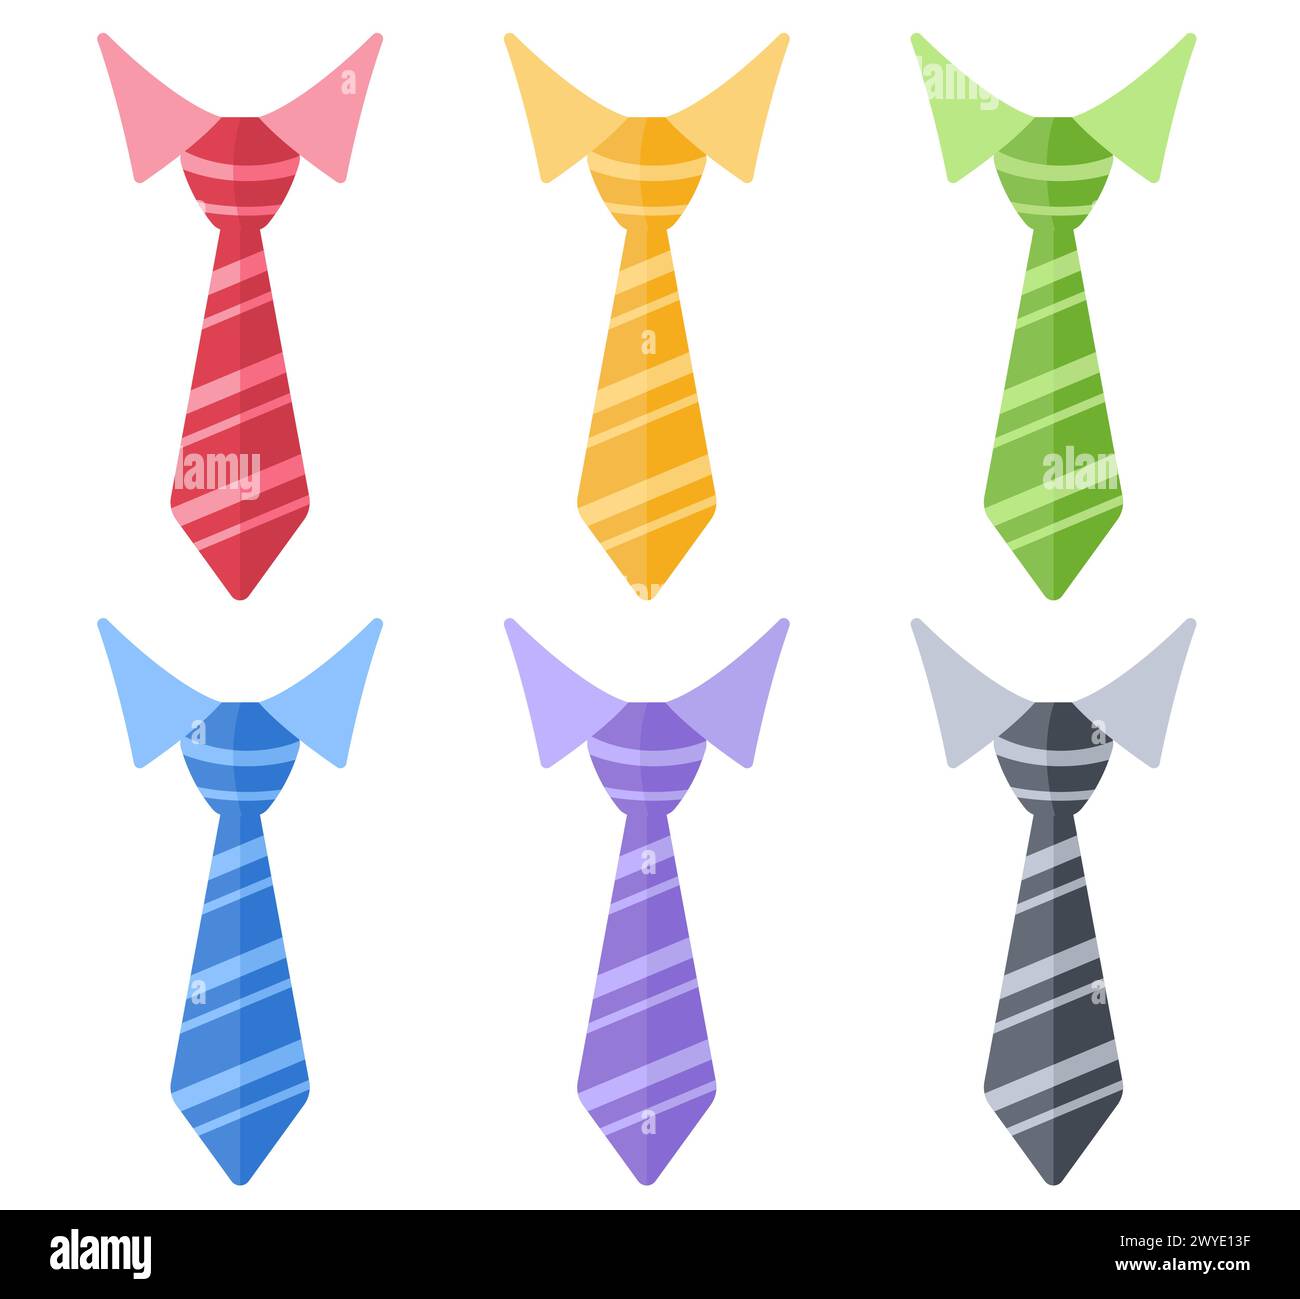 Illustration de cravates ou cravates design plat Illustration de Vecteur